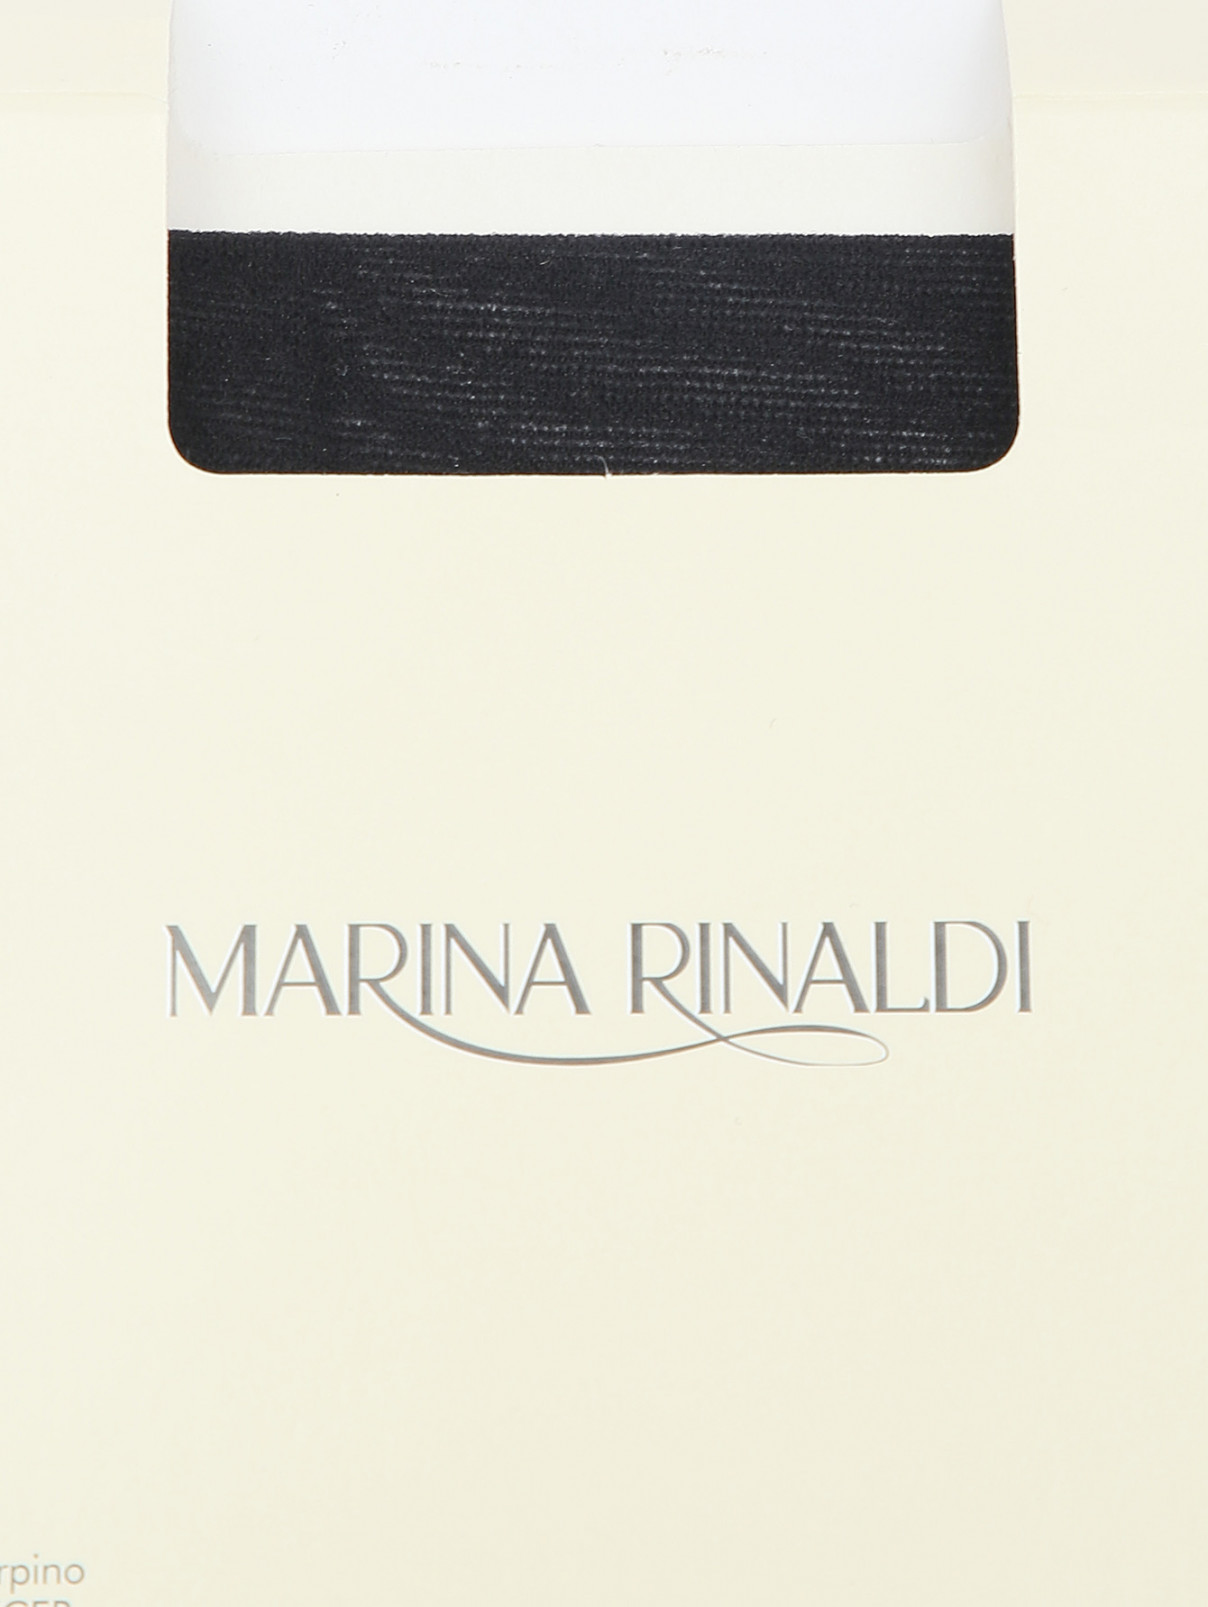 Колготки 20 DEN Marina Rinaldi  –  Деталь  – Цвет:  Черный